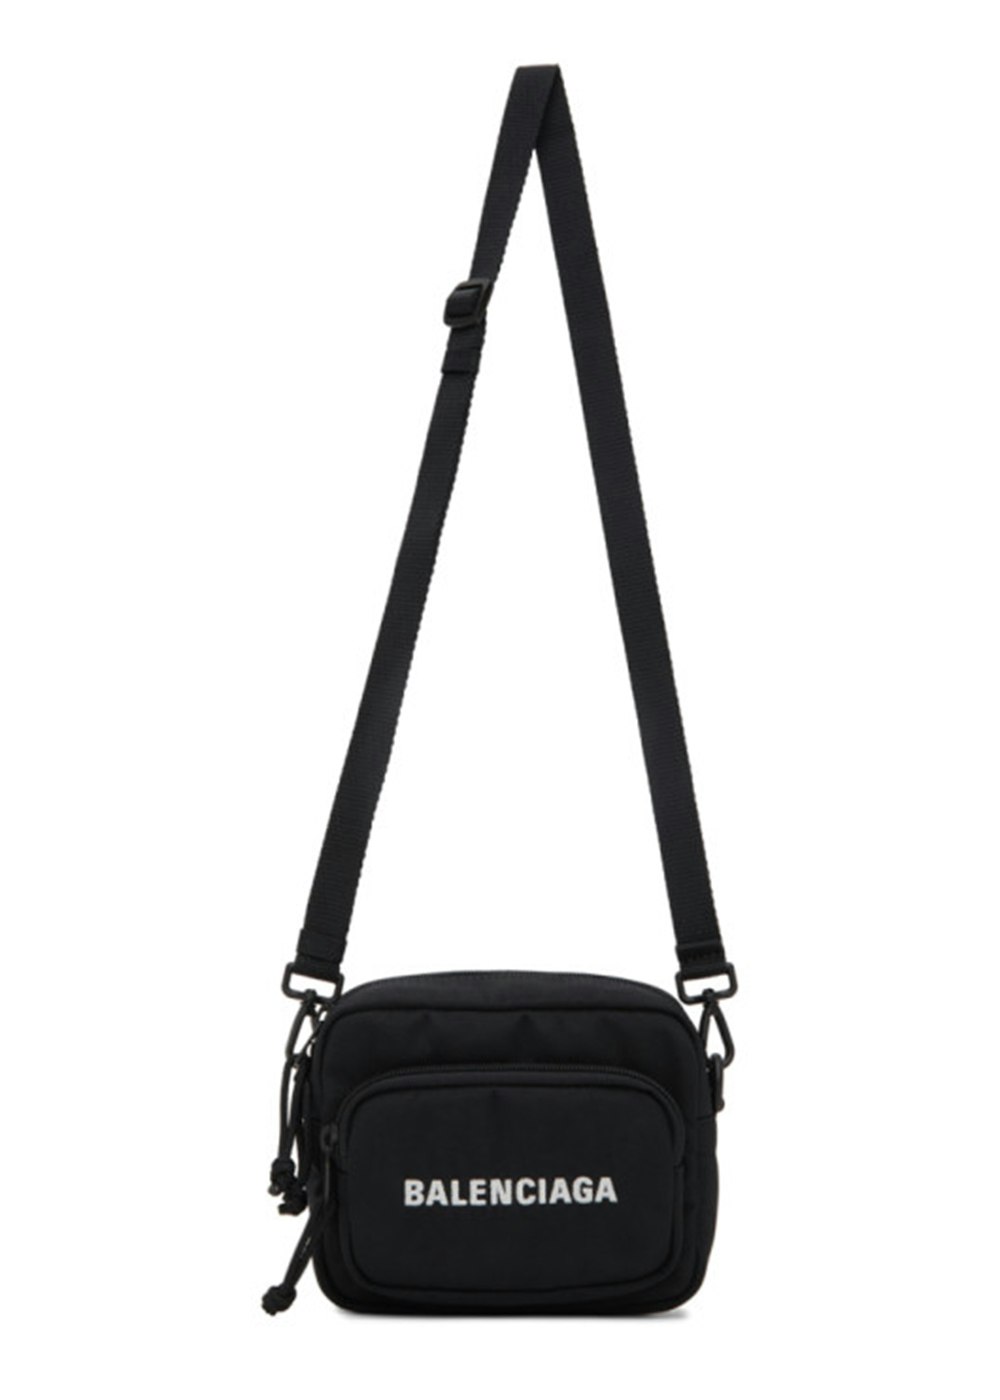 Balenciaga Wheel Logo Embroidered Camera Bag Black in Nylon US